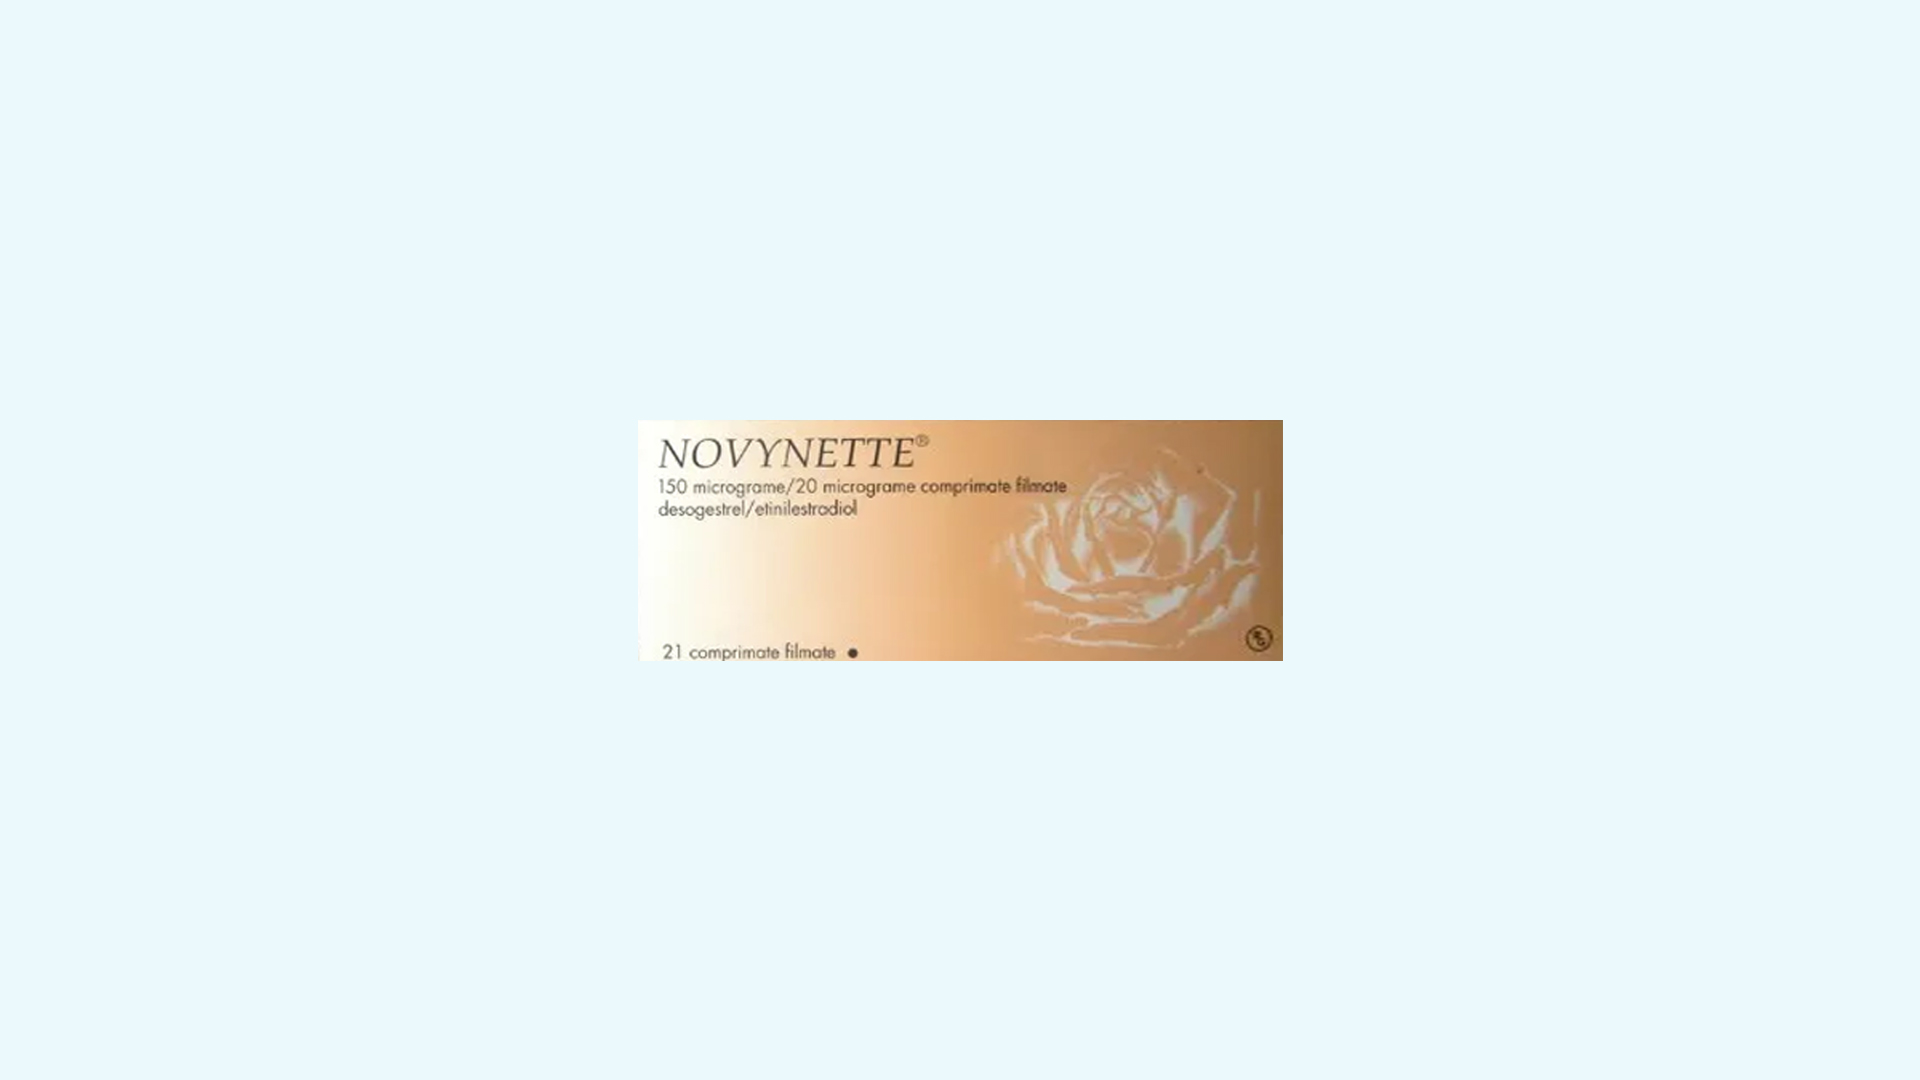 Novynette – informacje o leku  dawkowanie oraz przeciwwskazania